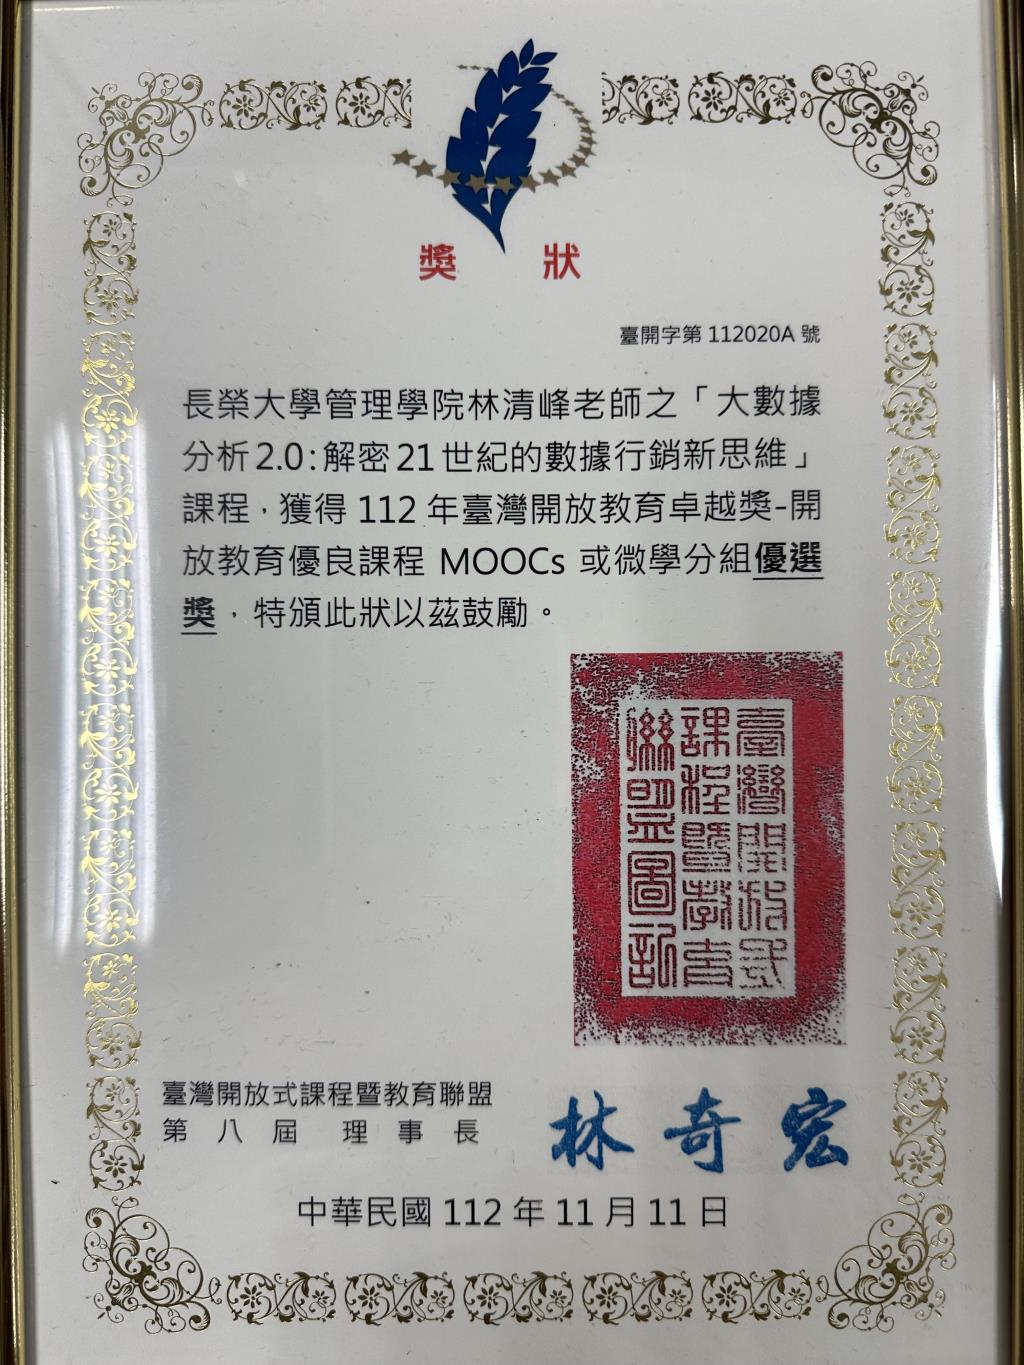 【恭賀】資訊管理學系林清峰老師榮獲112年台灣開放教育卓越獎